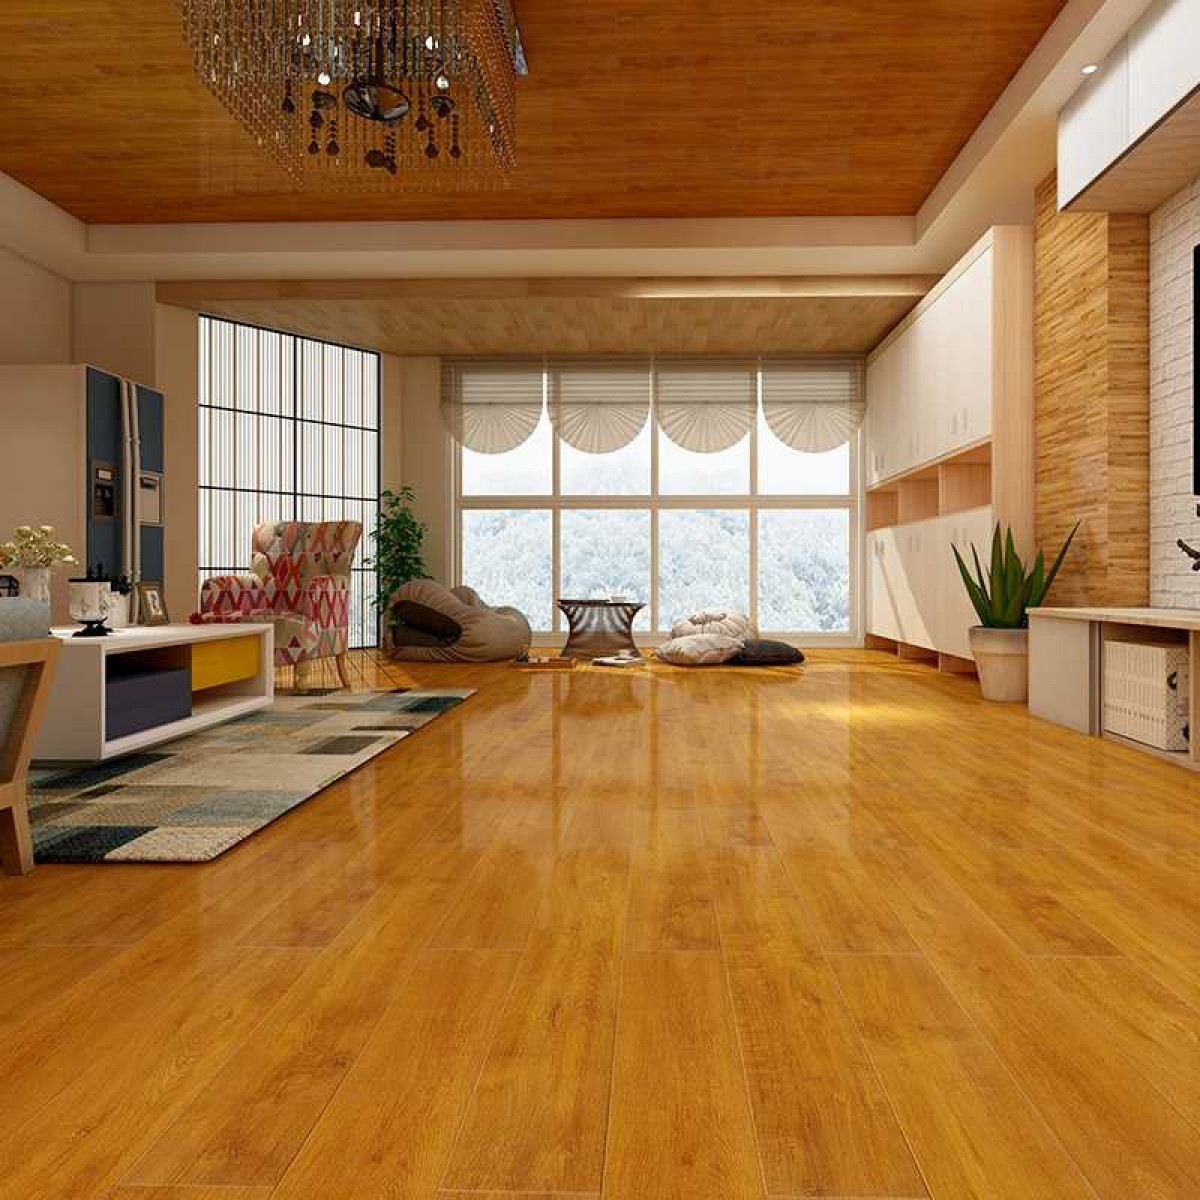 生活家巴洛克木地板强化复合地板-爱丽丝泉 地板表面超强耐磨防水防潮防刮擦